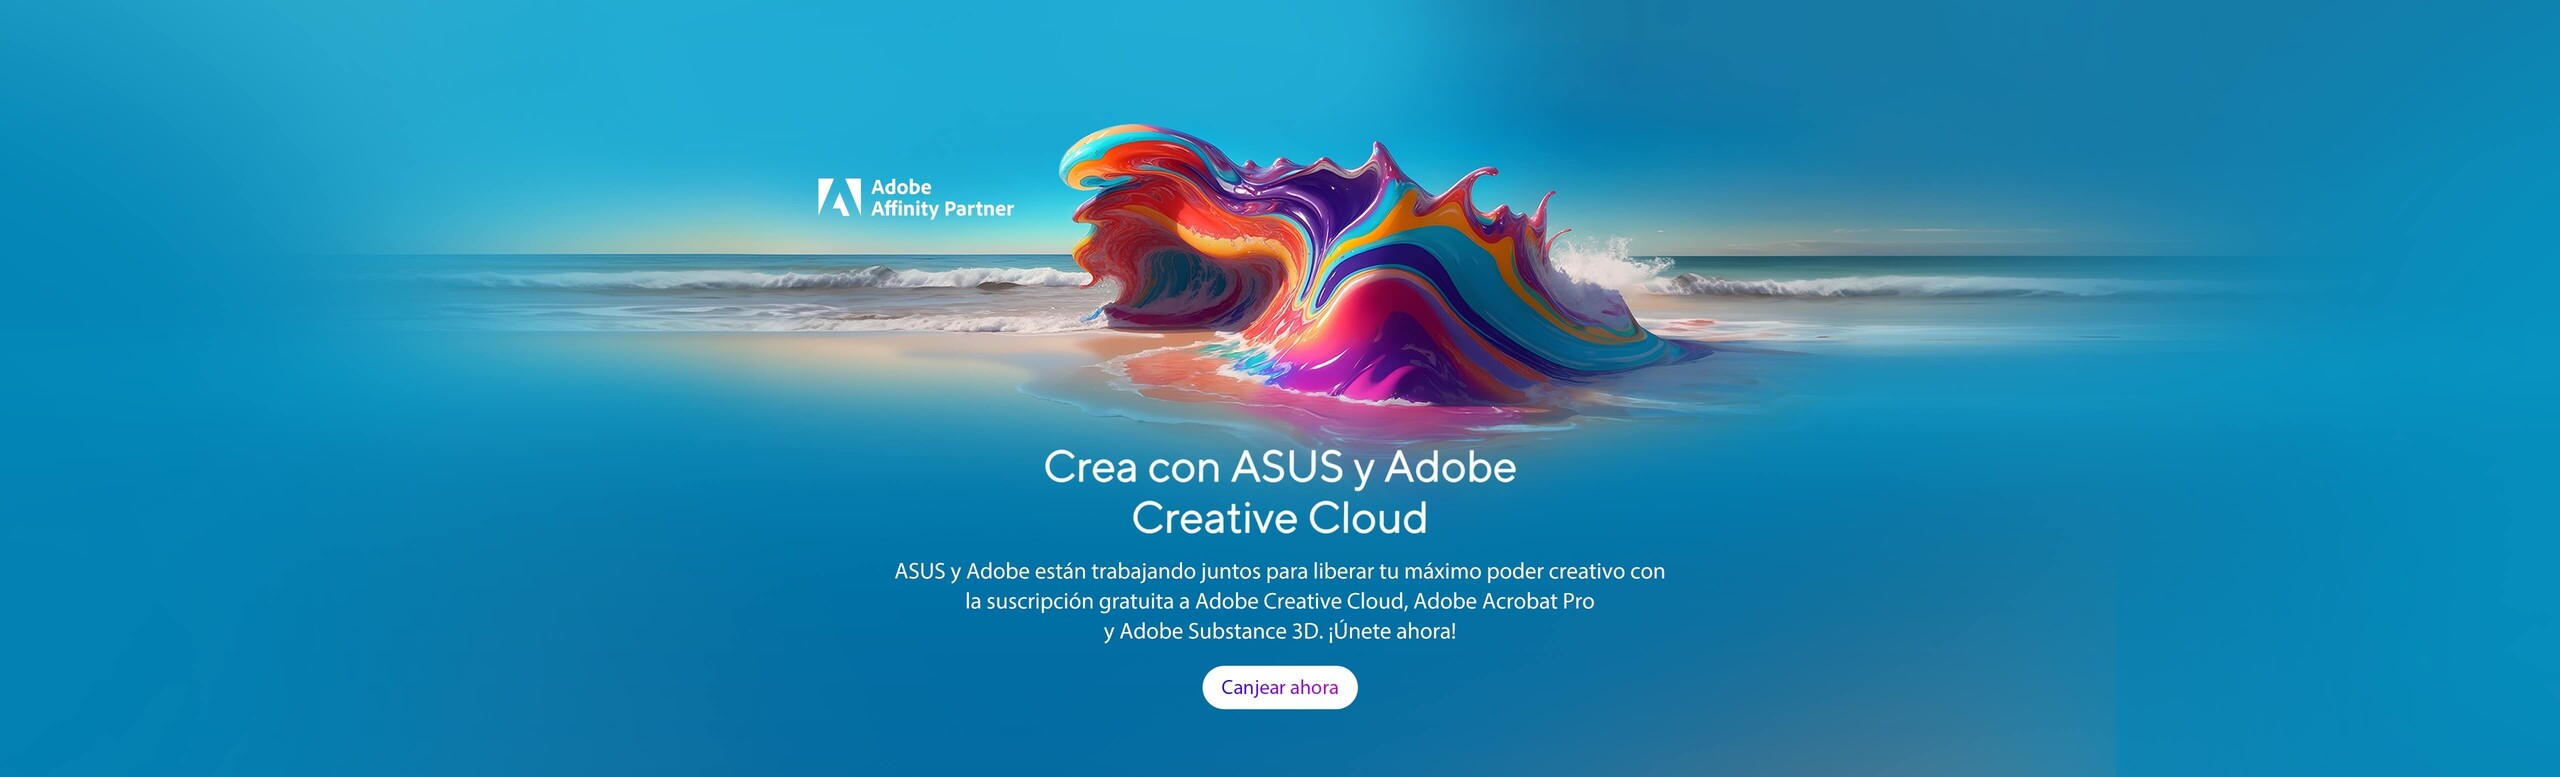 ASUS ahora con Adobe Creative Cloud